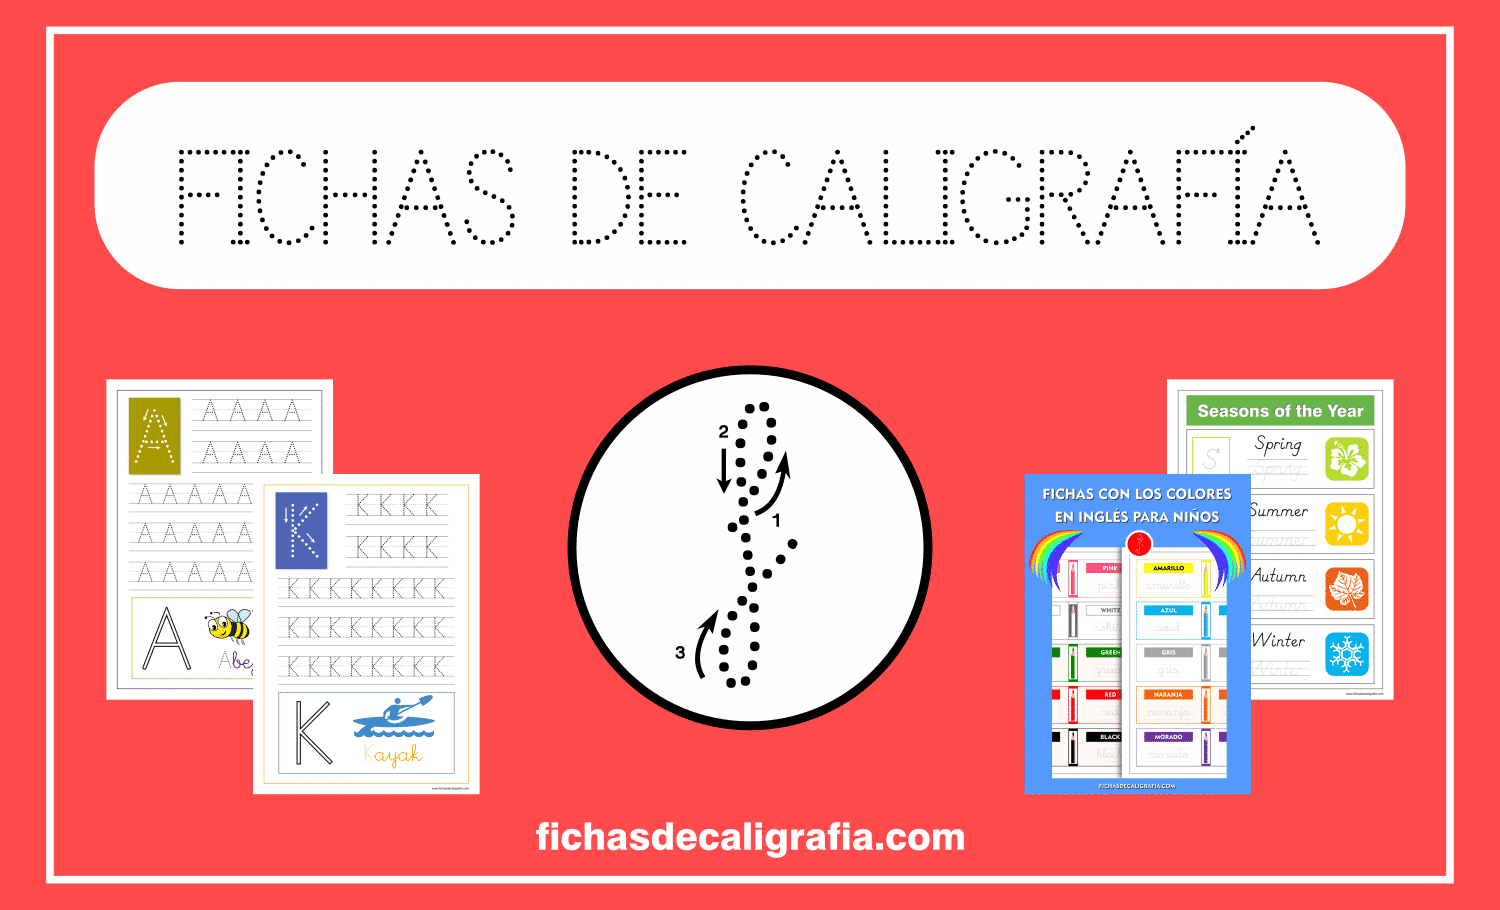 Fichas De Caligrafia Pdf Fichas de Caligrafía - Ejercicios y Fichas en PDF para Imprimir.